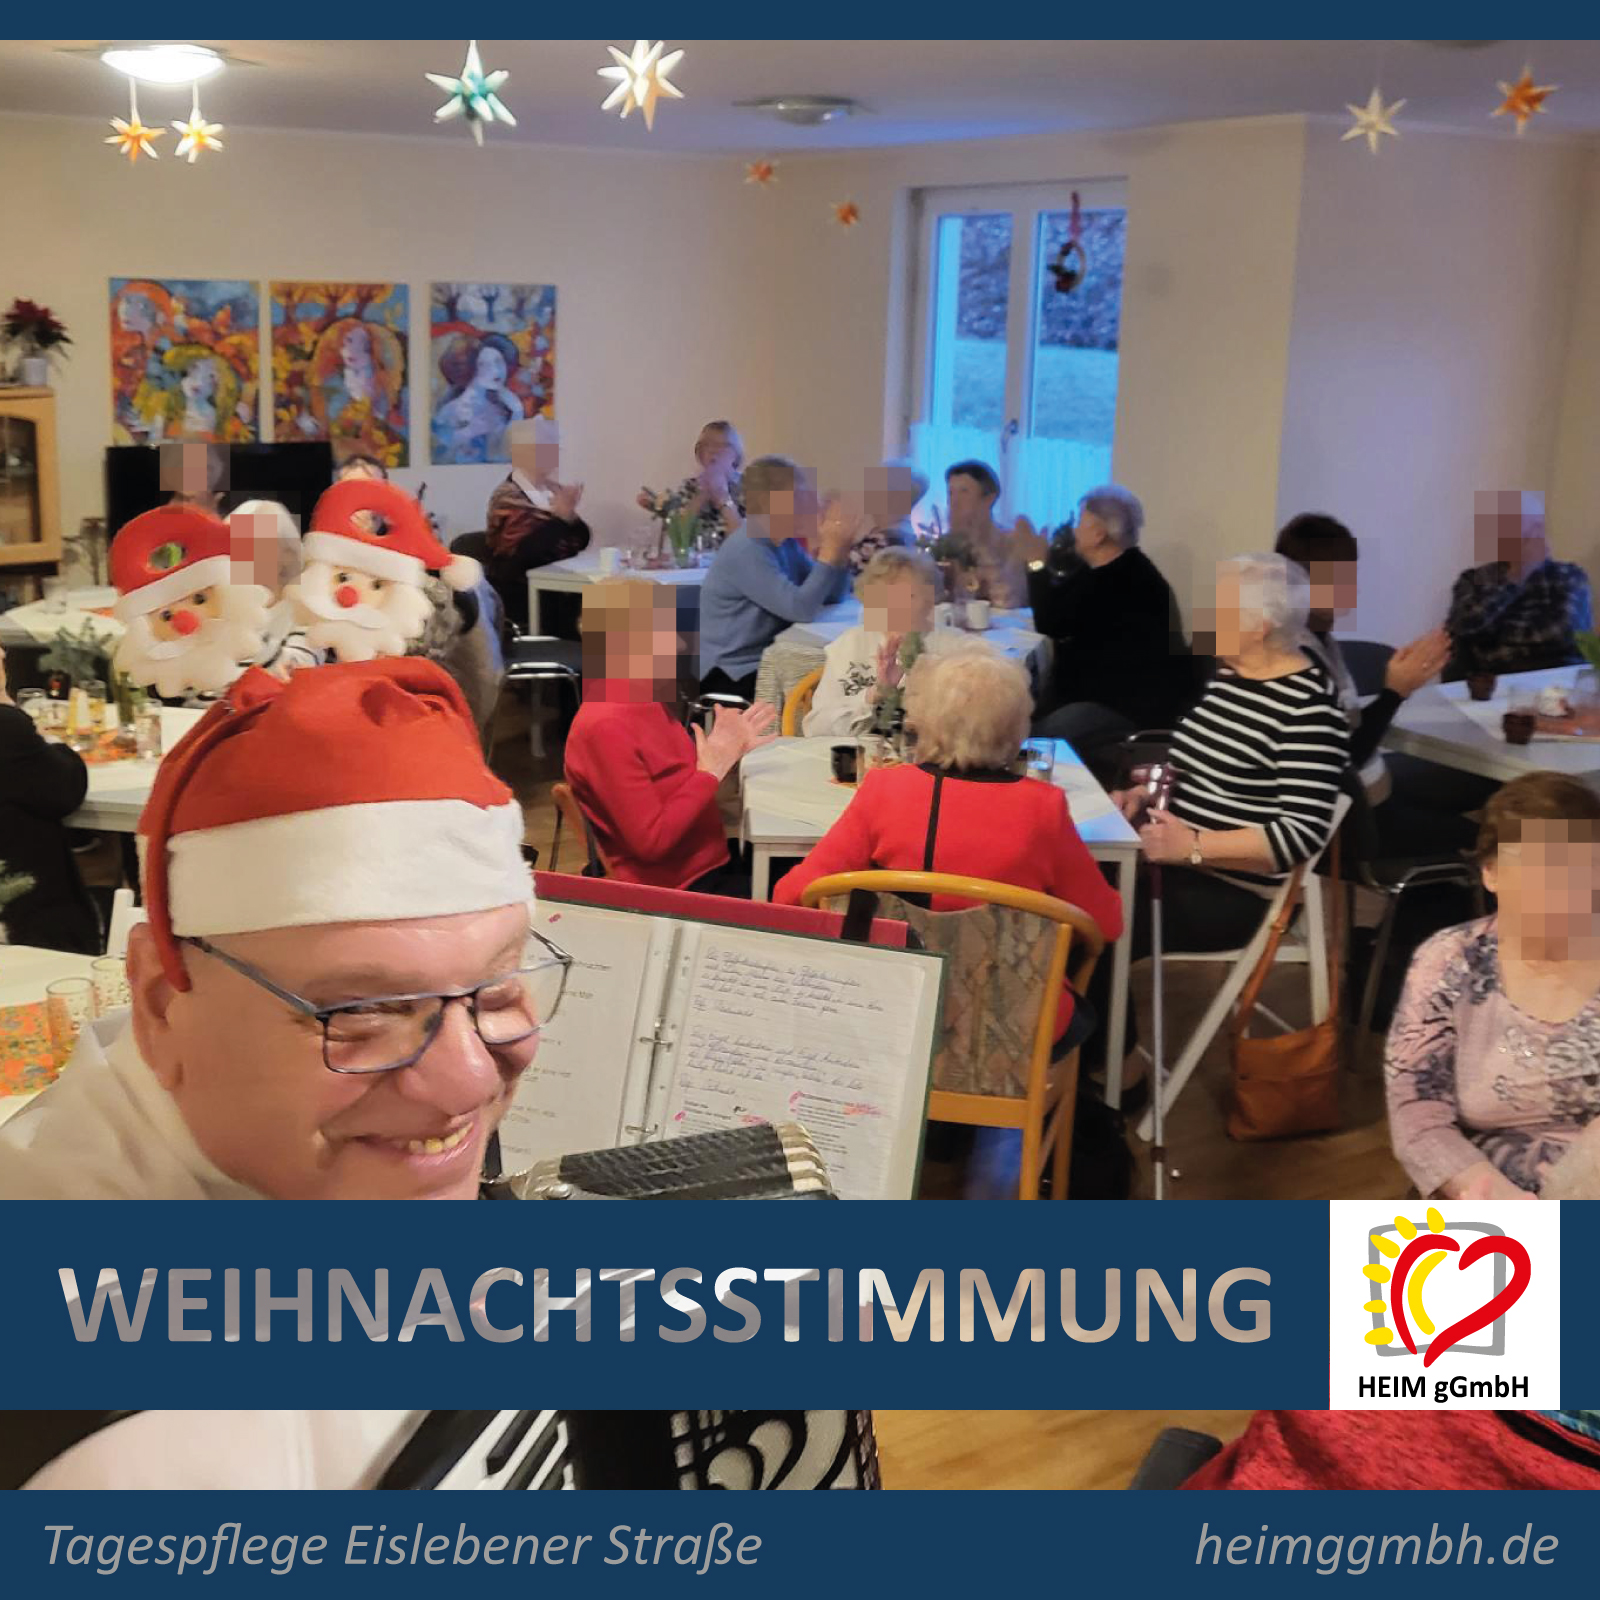 Lang ersehnte Weihnachtsfeier in der Tagespflege Eislebener Straße 17 in Chemnitz der HEIM gemeinnützige GmbH